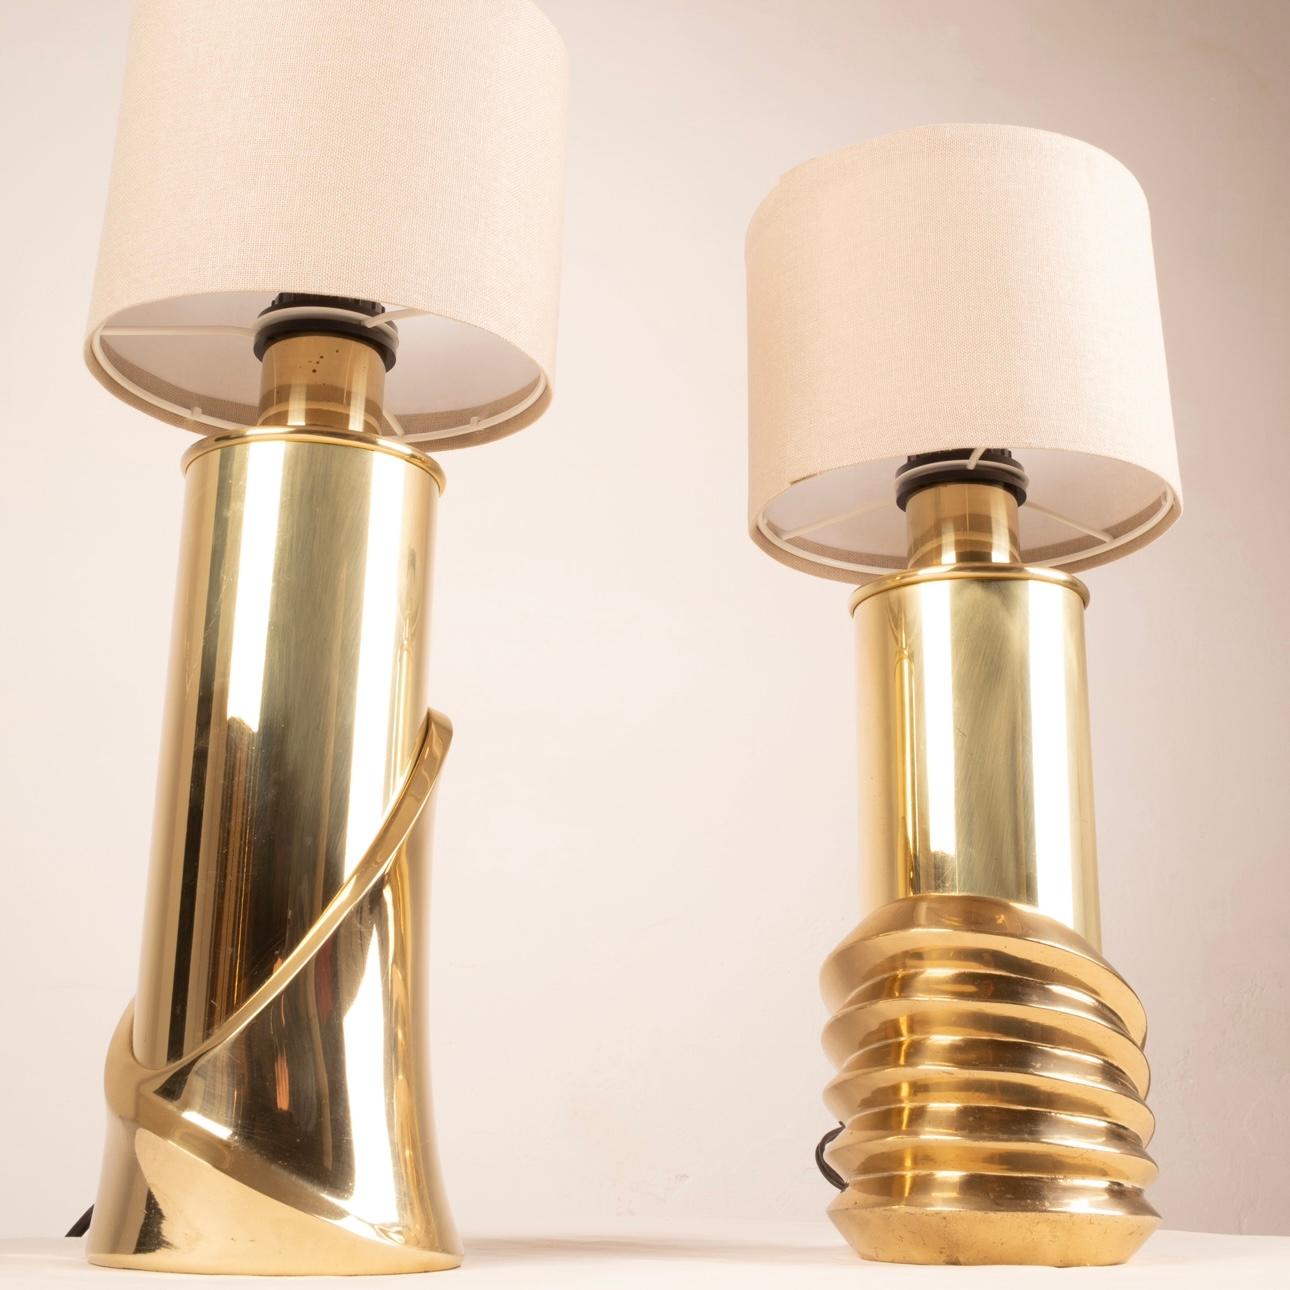 Élégante paire de lampes de table en laiton signées par le célèbre designer Luciano Frigerio pour l'illustre marque Frigerio de Desio dans les années 1970.
Ces lampes, en excellent état, présentent deux designs différents mais appartiennent à la